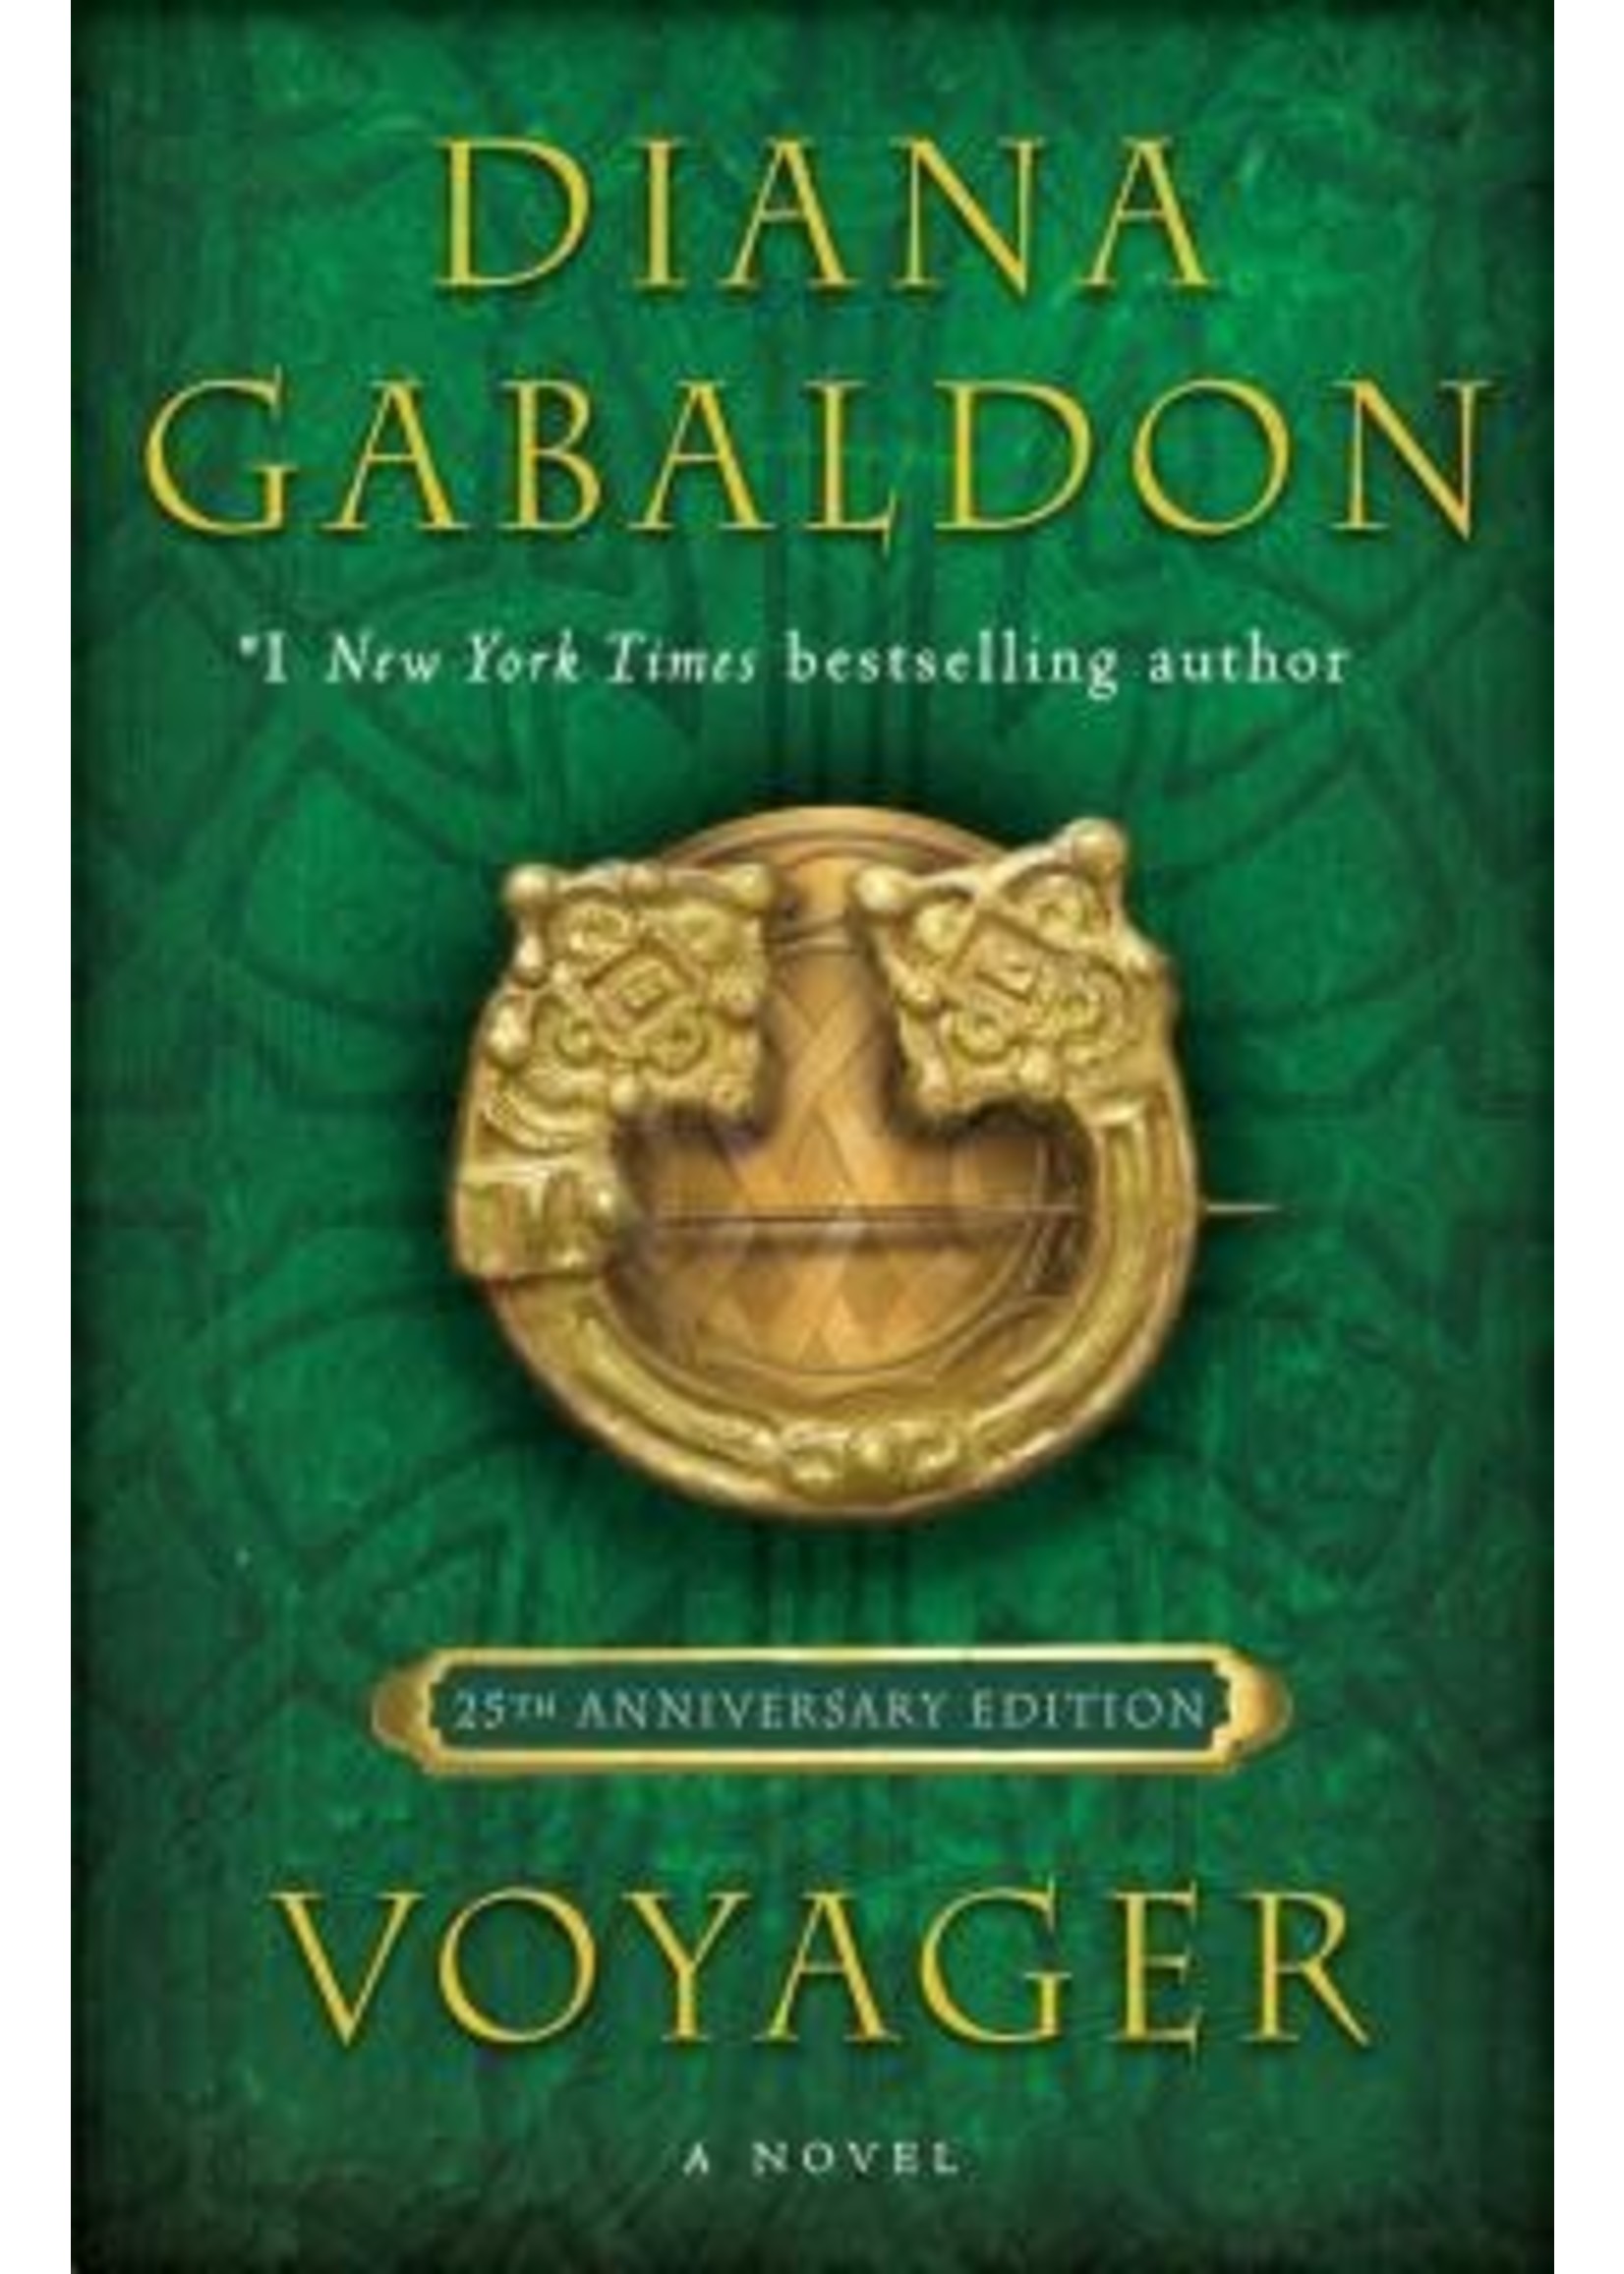 Voyager (Outlander #3) by Diana Gabaldon